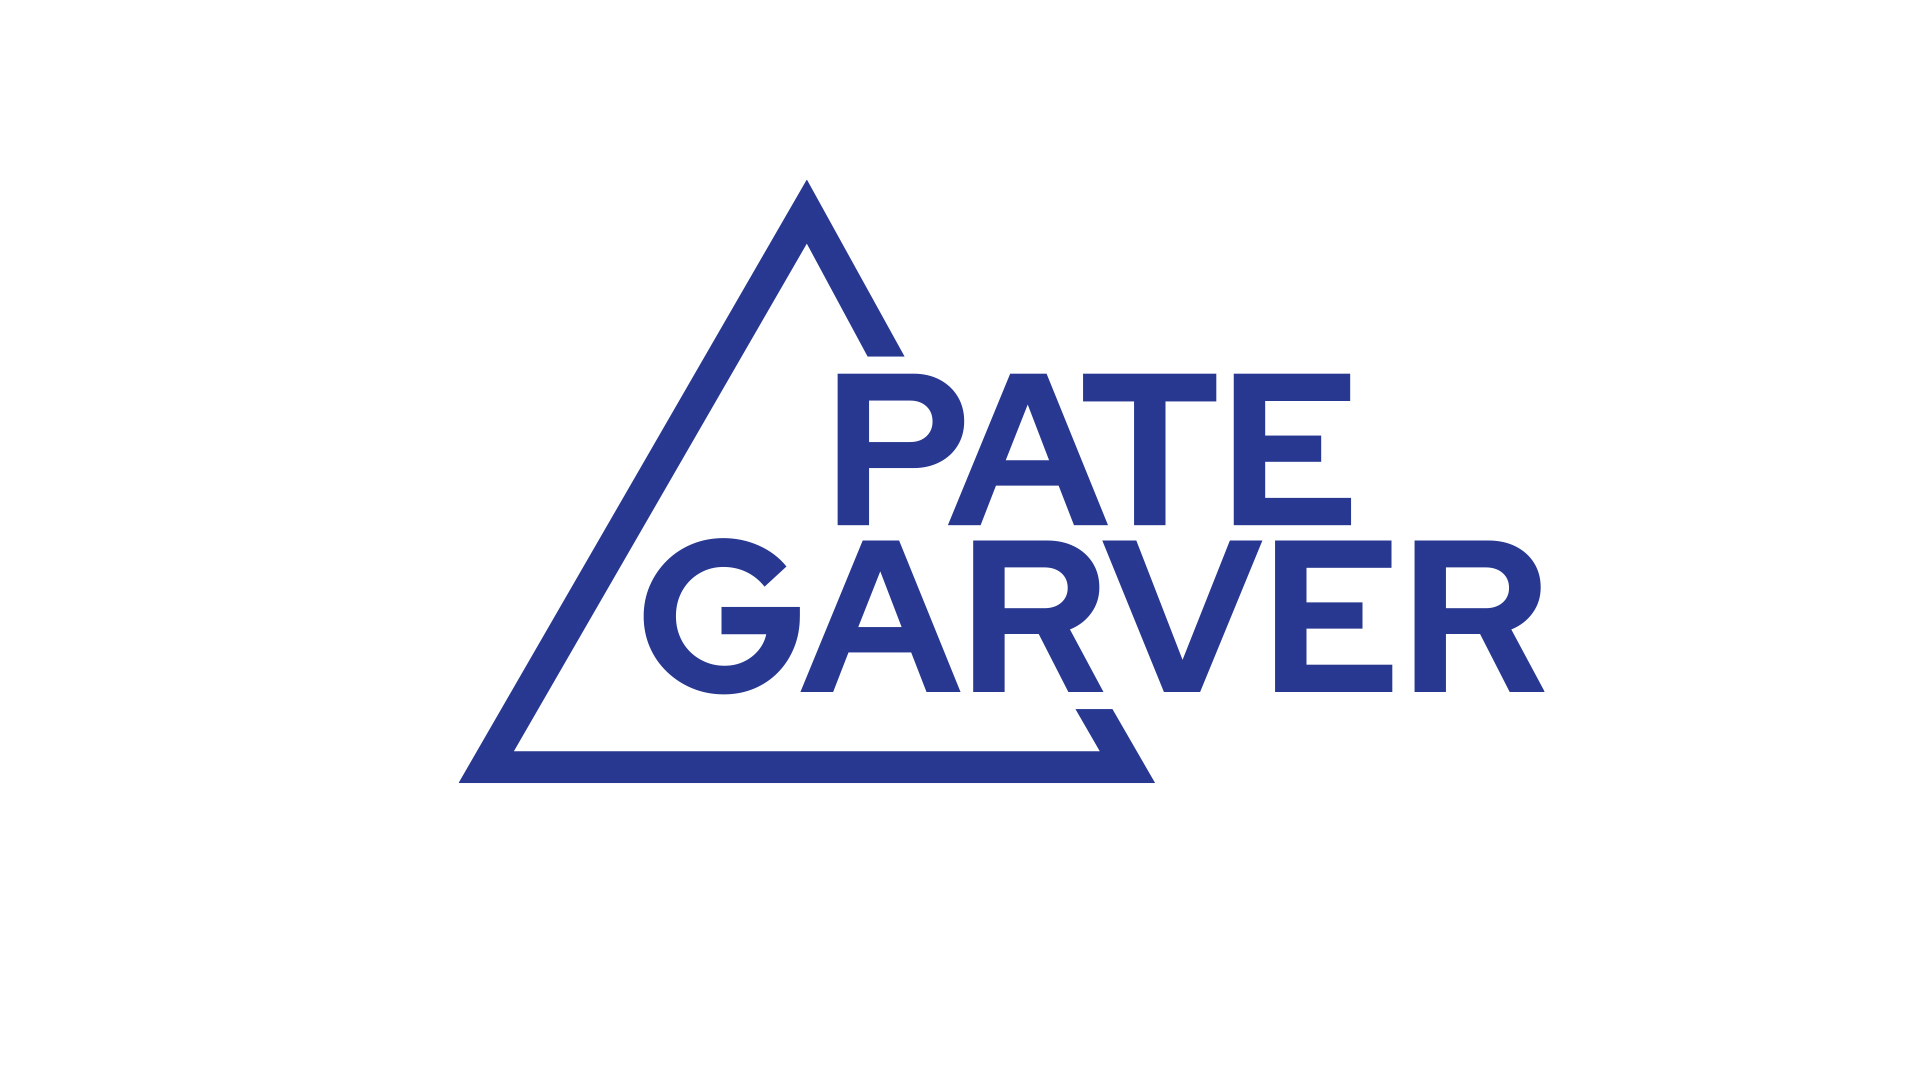 Pate Garver